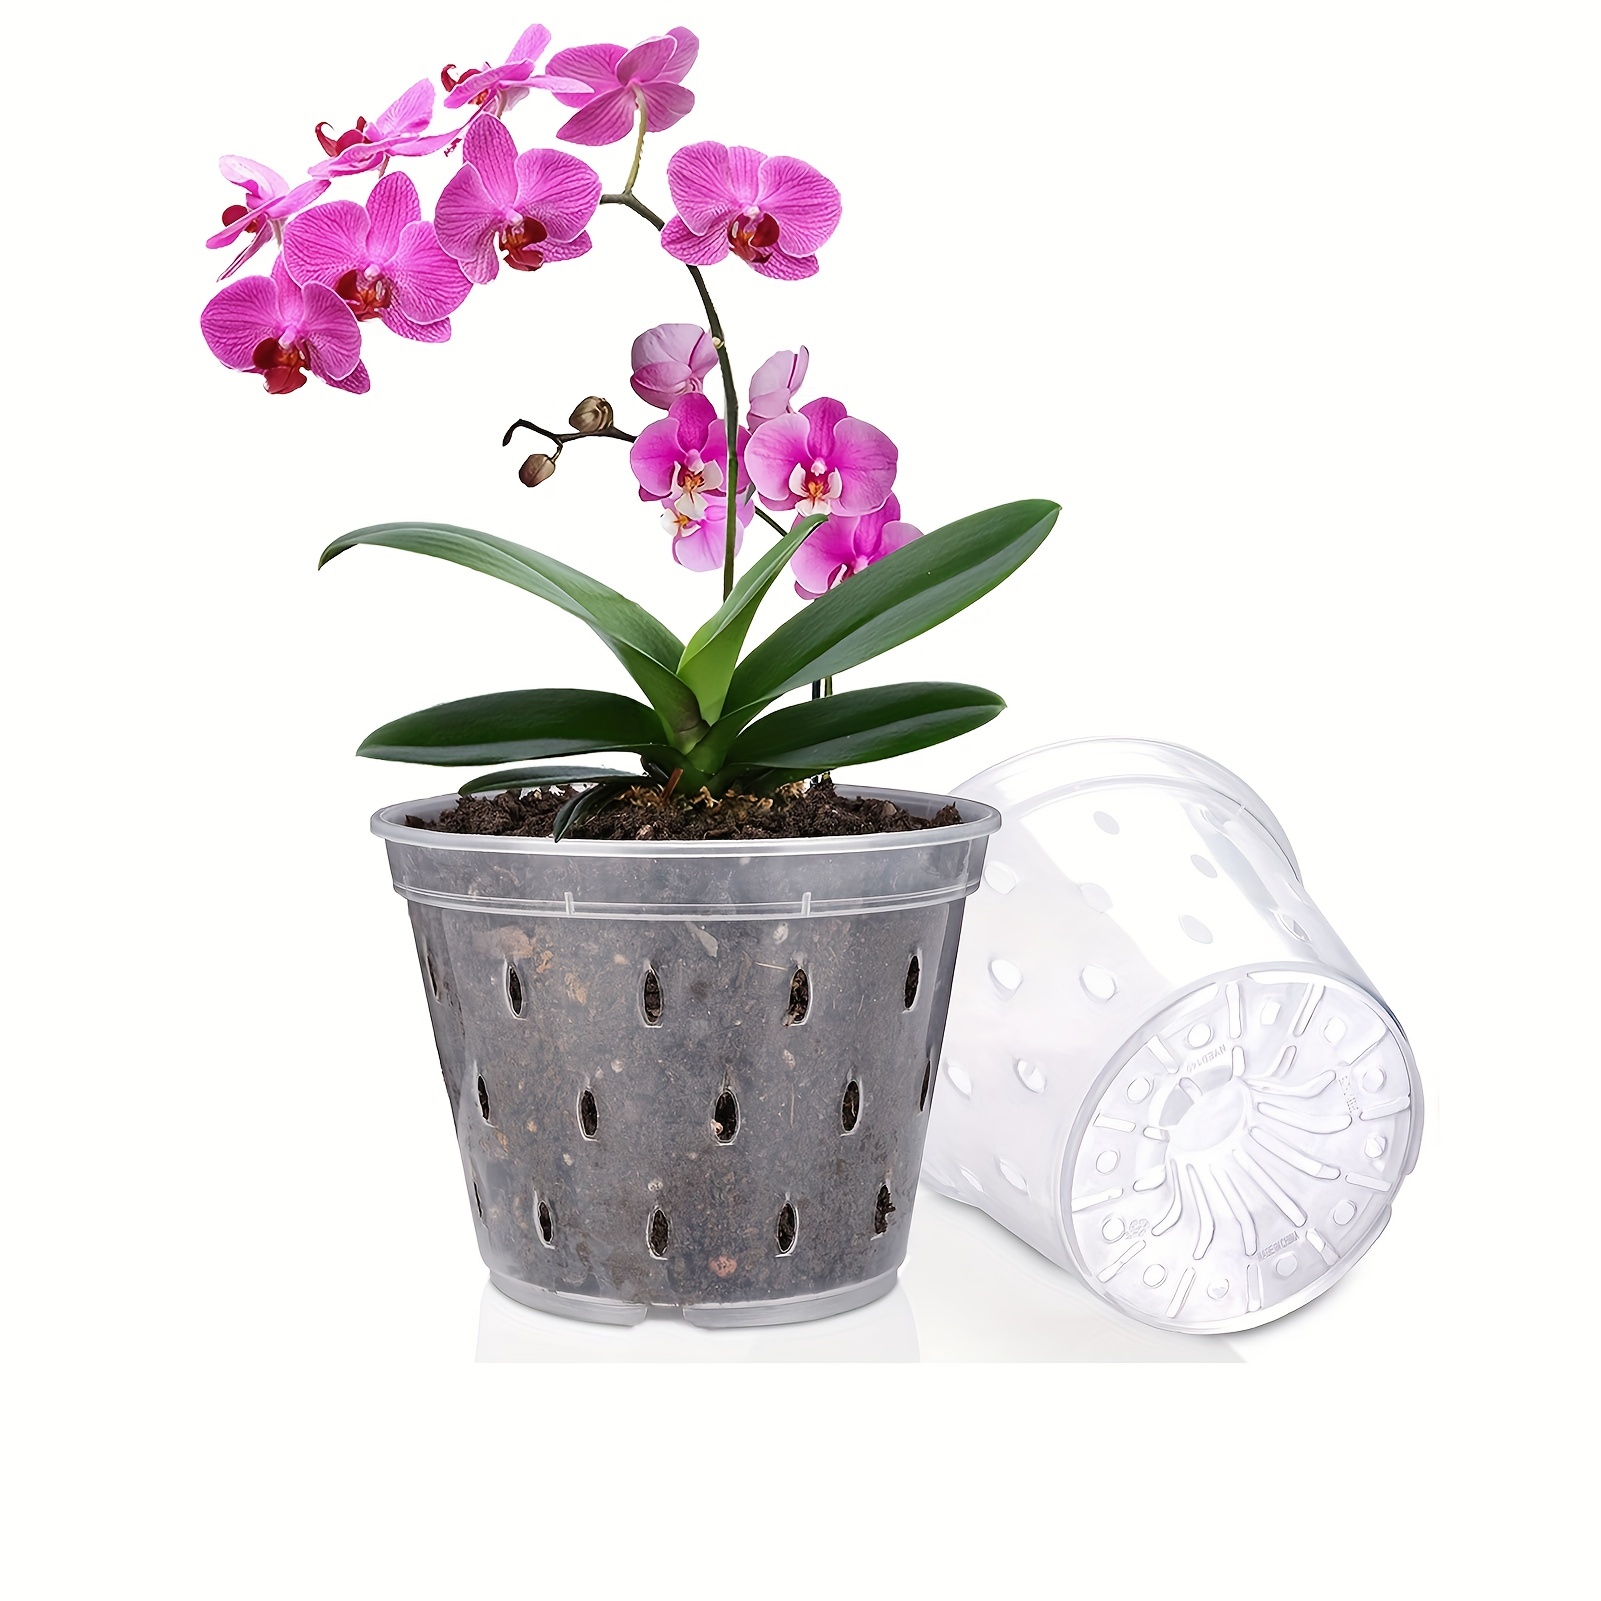 L'importance du pot en plastique de l'orchidée